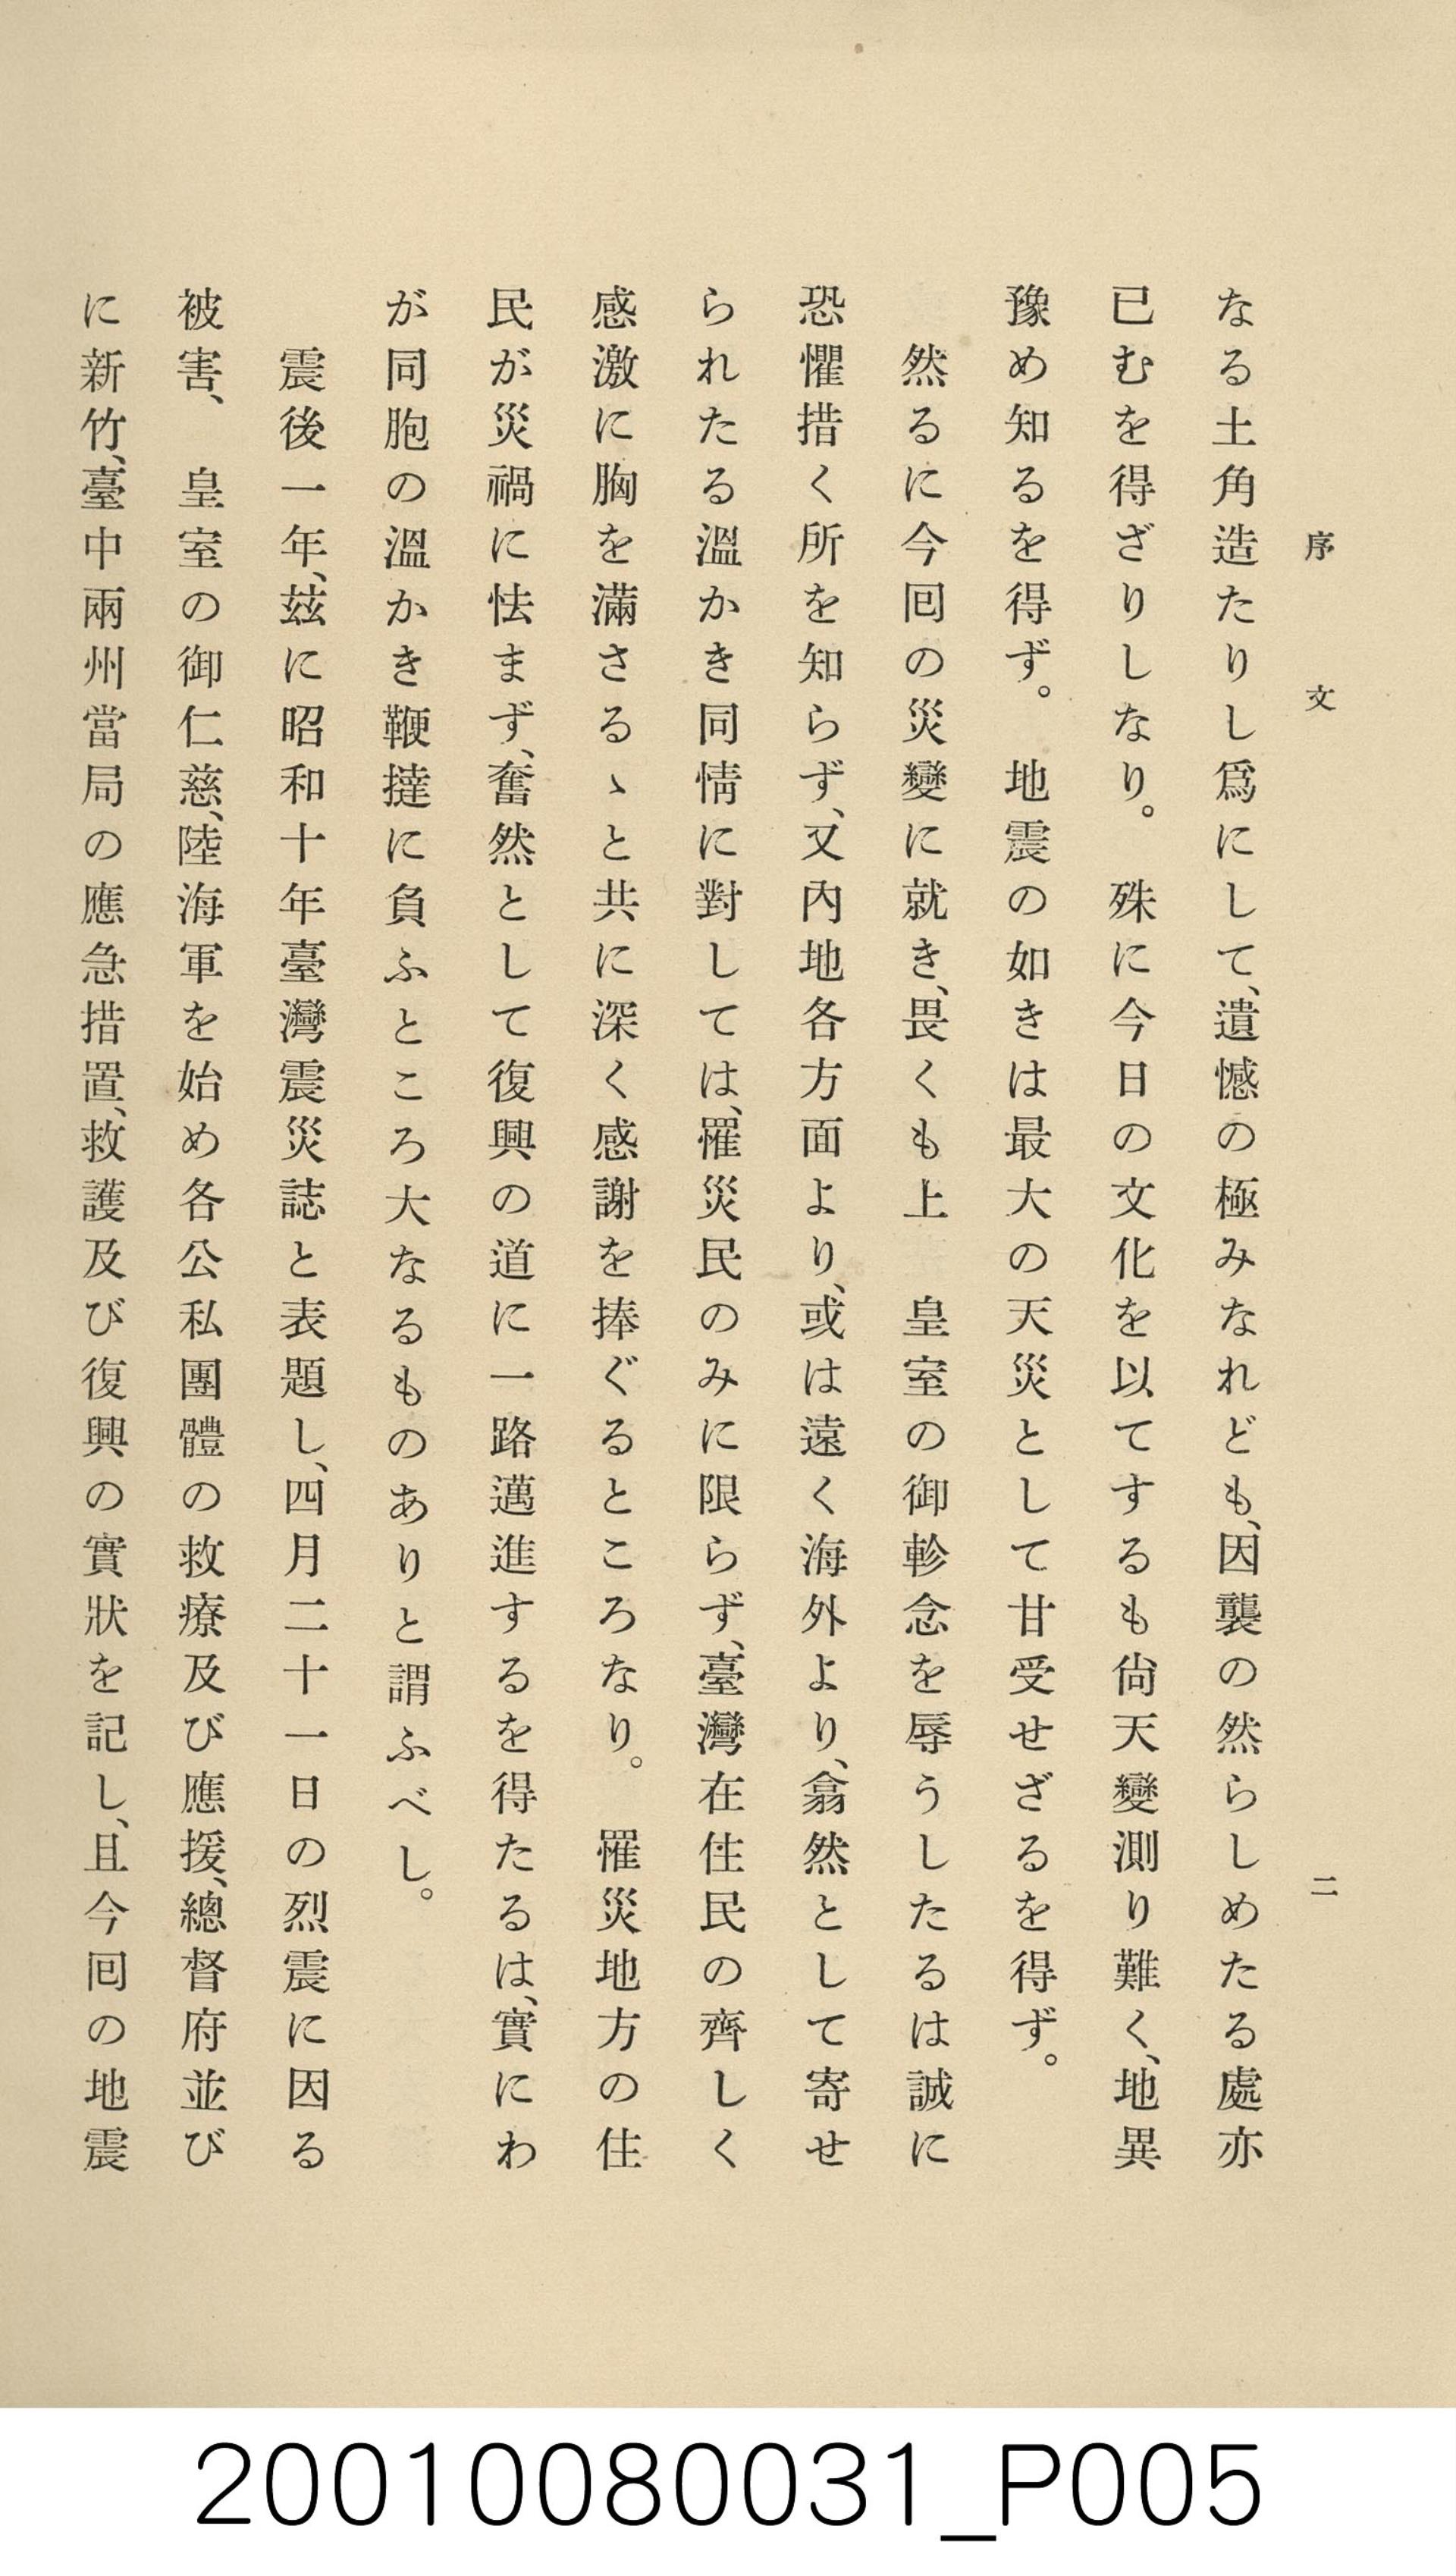 愛知縣新聞總觀 1935年版（昭和10年版）